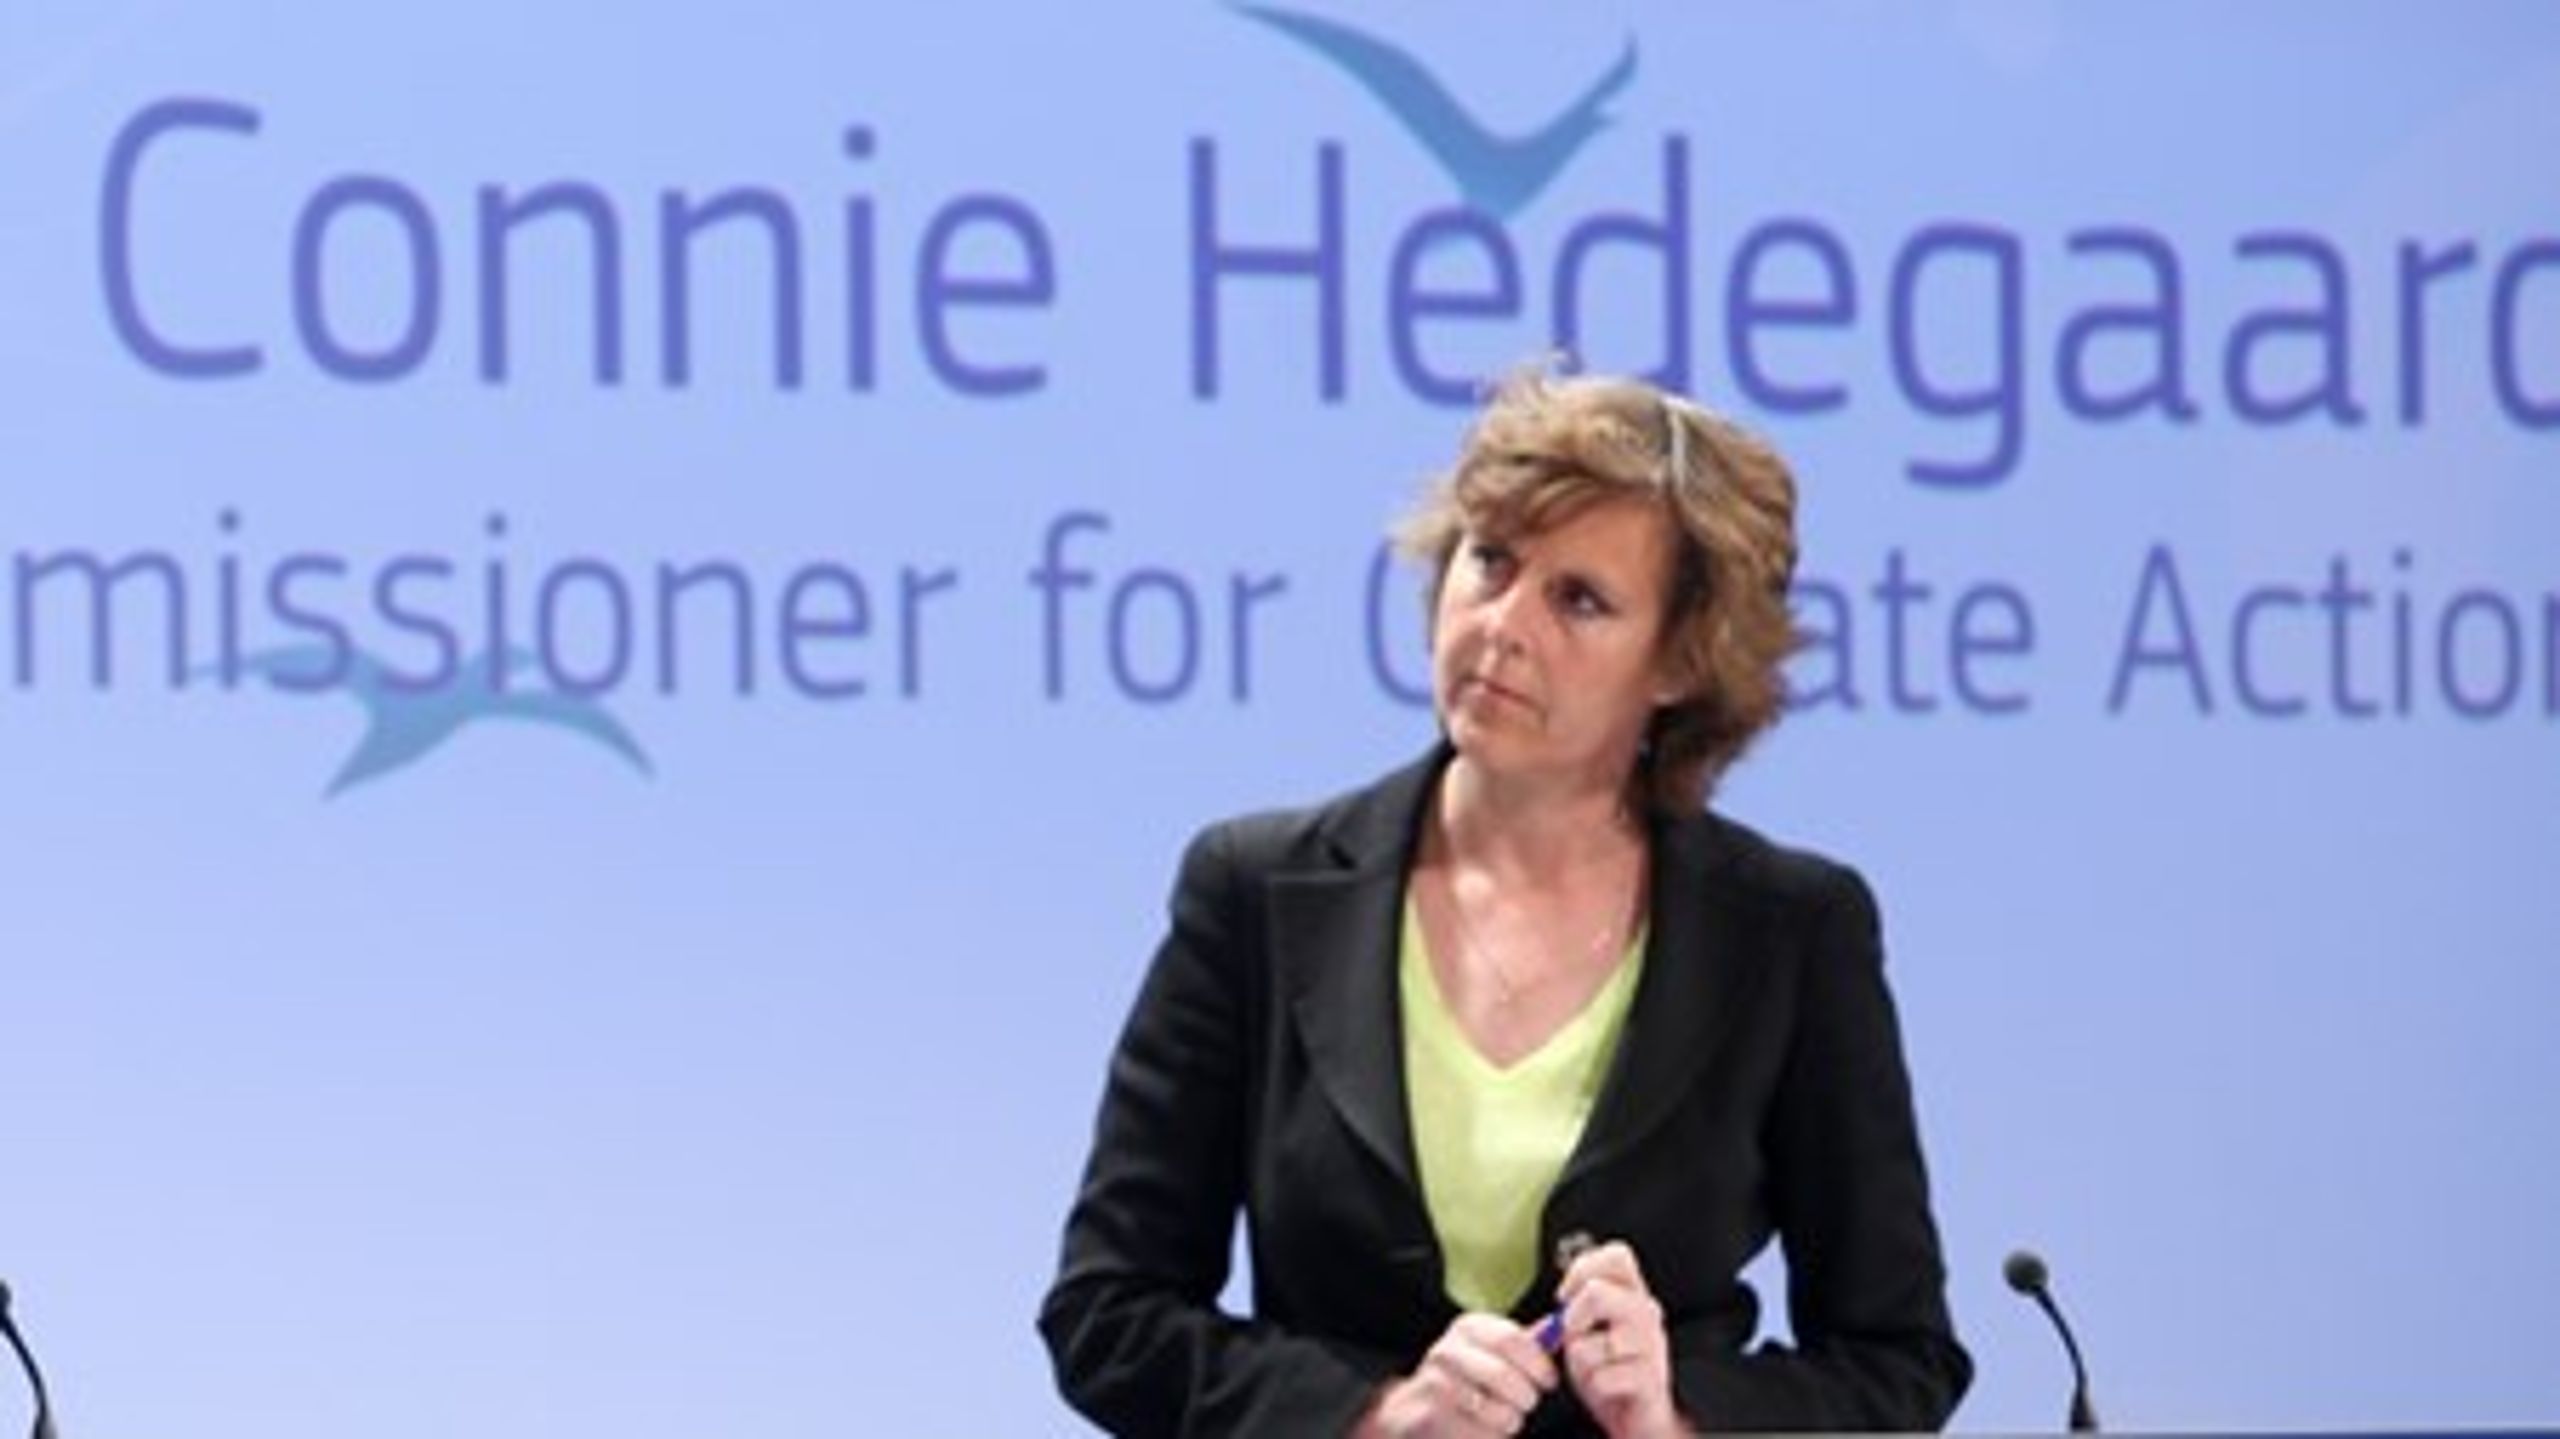 Efter man har iagttaget det amerikanske mediebillede, betaler man sin licens med glæde, pointerer Connie Hedegaard, formand for KR Foundation.